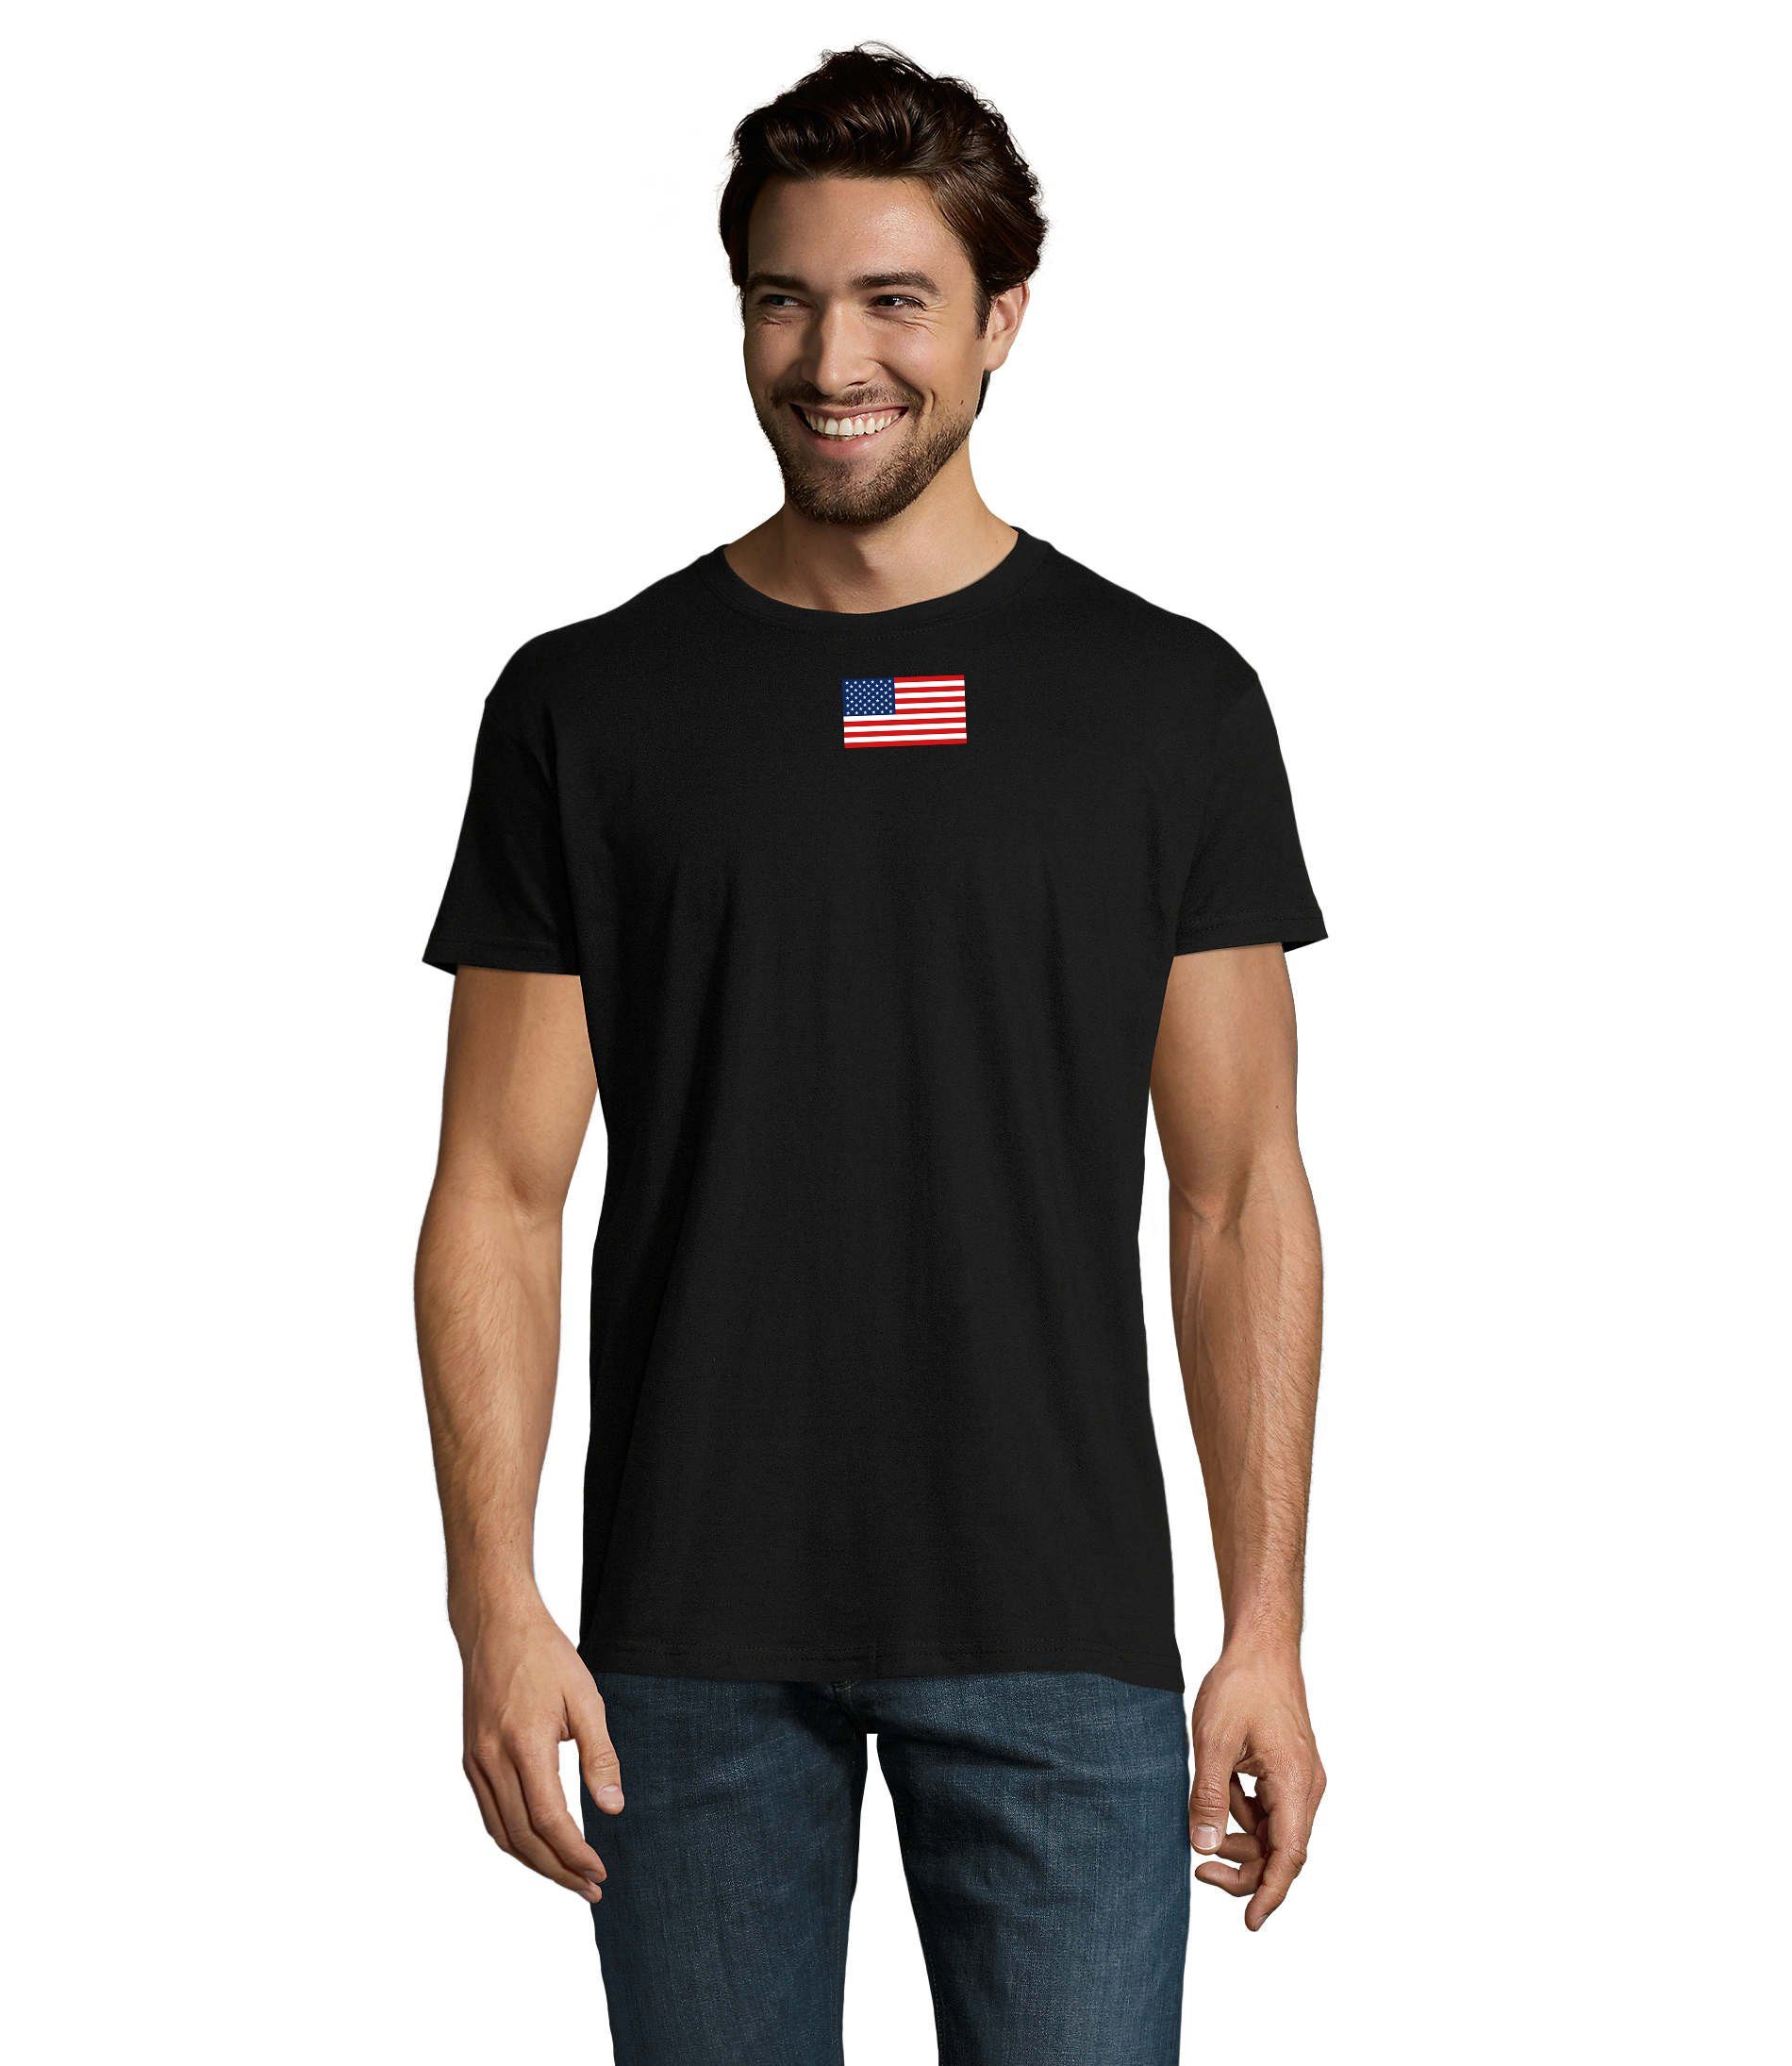 Blondie Staaten Vereinigte von Force Nartion Herren T-Shirt & Brownie Amerika USA Schwarz Army Air